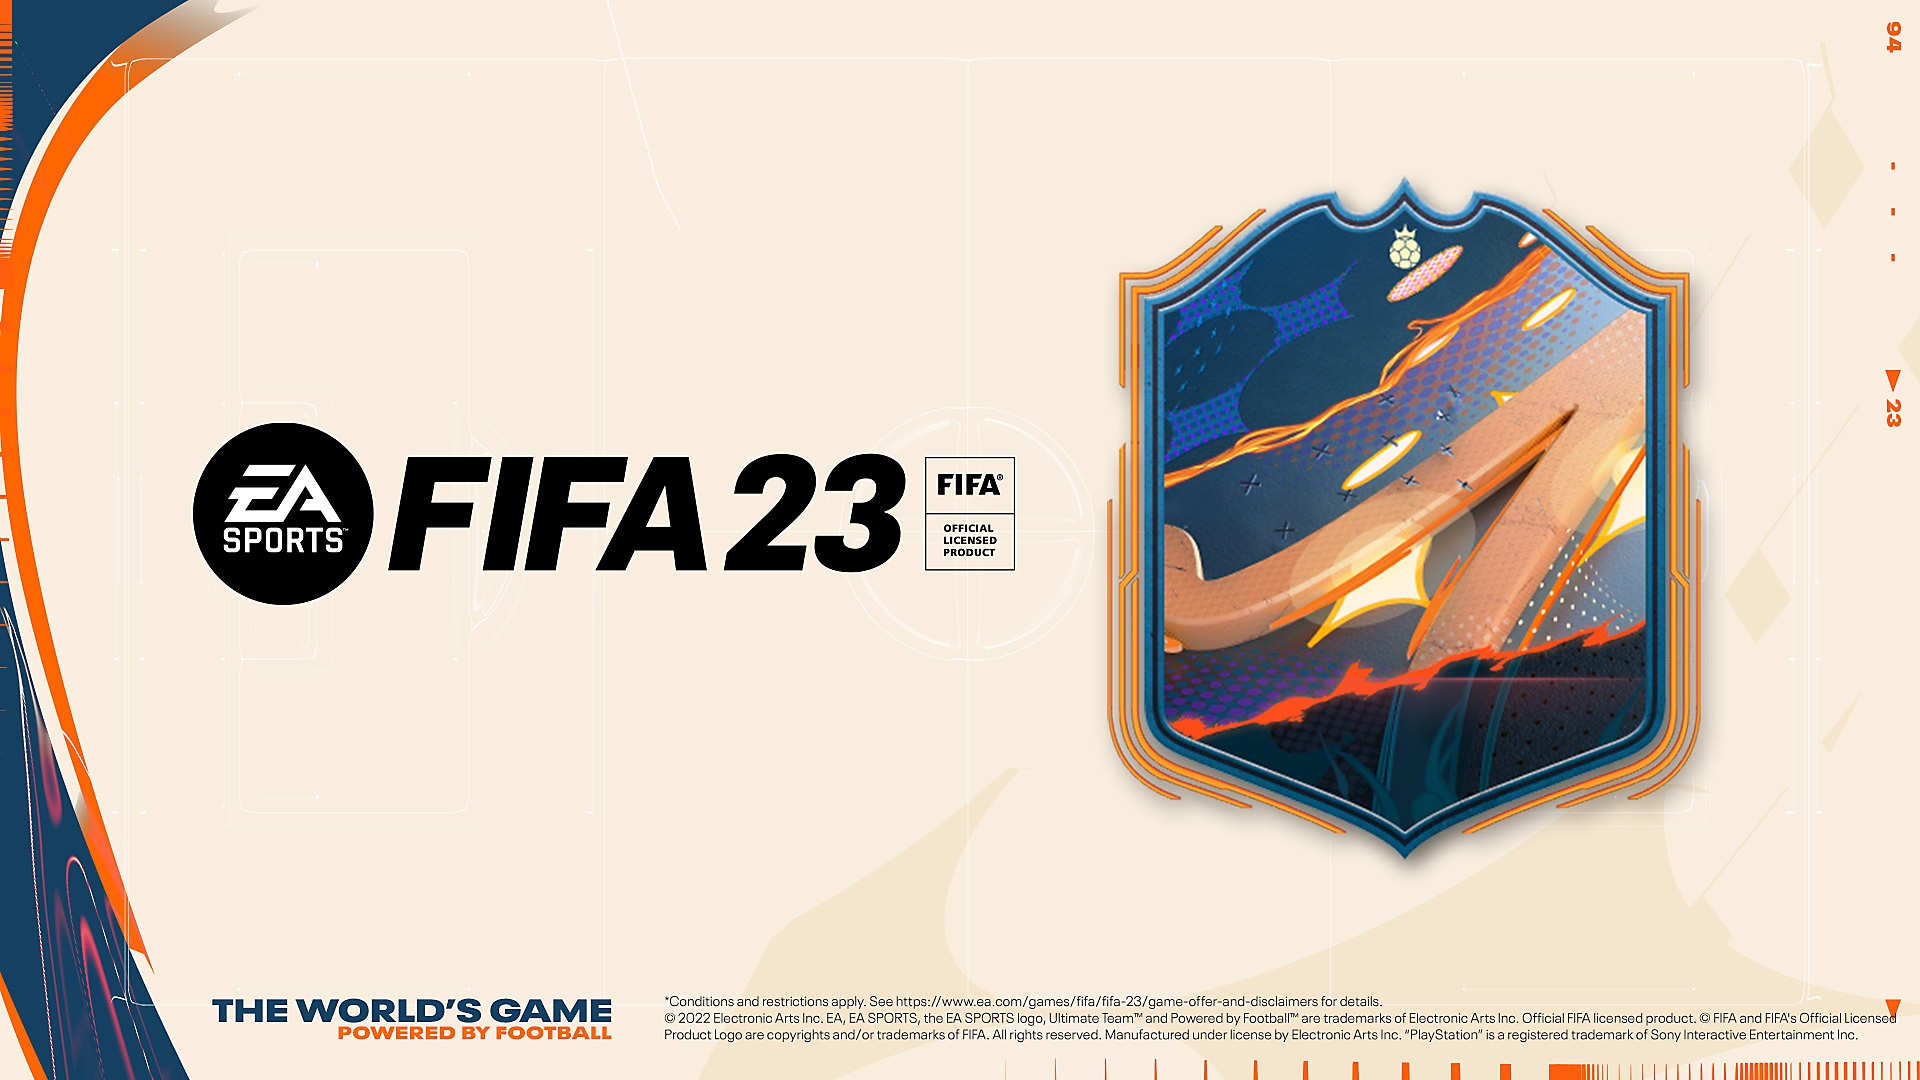 Ilustración de la reserva de EA Sports FIFA 23 que muestra un escudo multicolor y el logotipo de FIFA 23